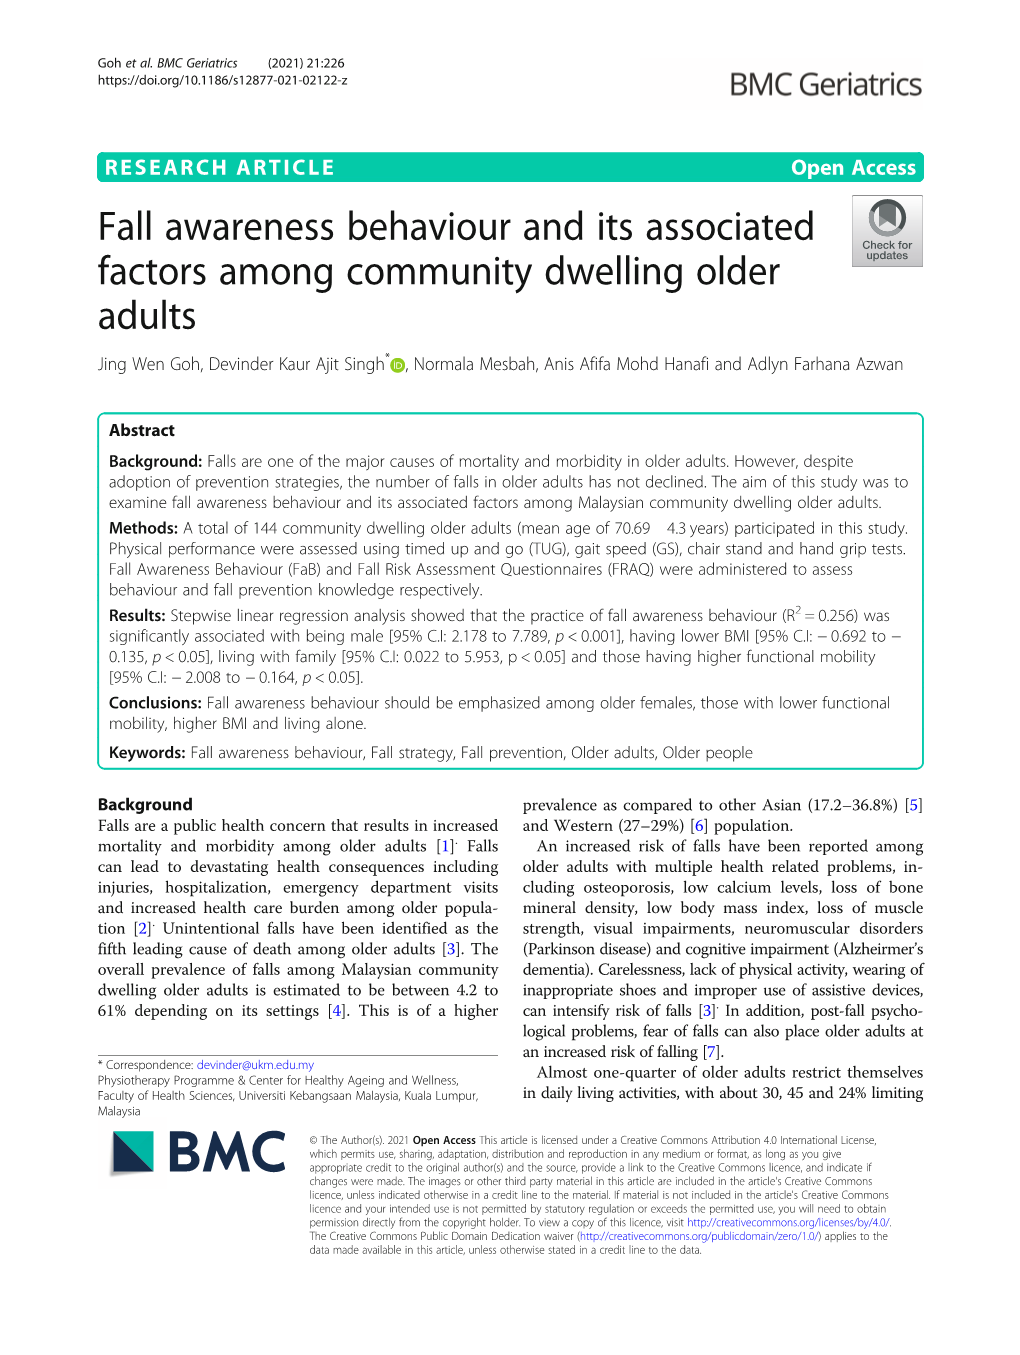 Fall Awareness Behaviour and Its Associated Factors Among